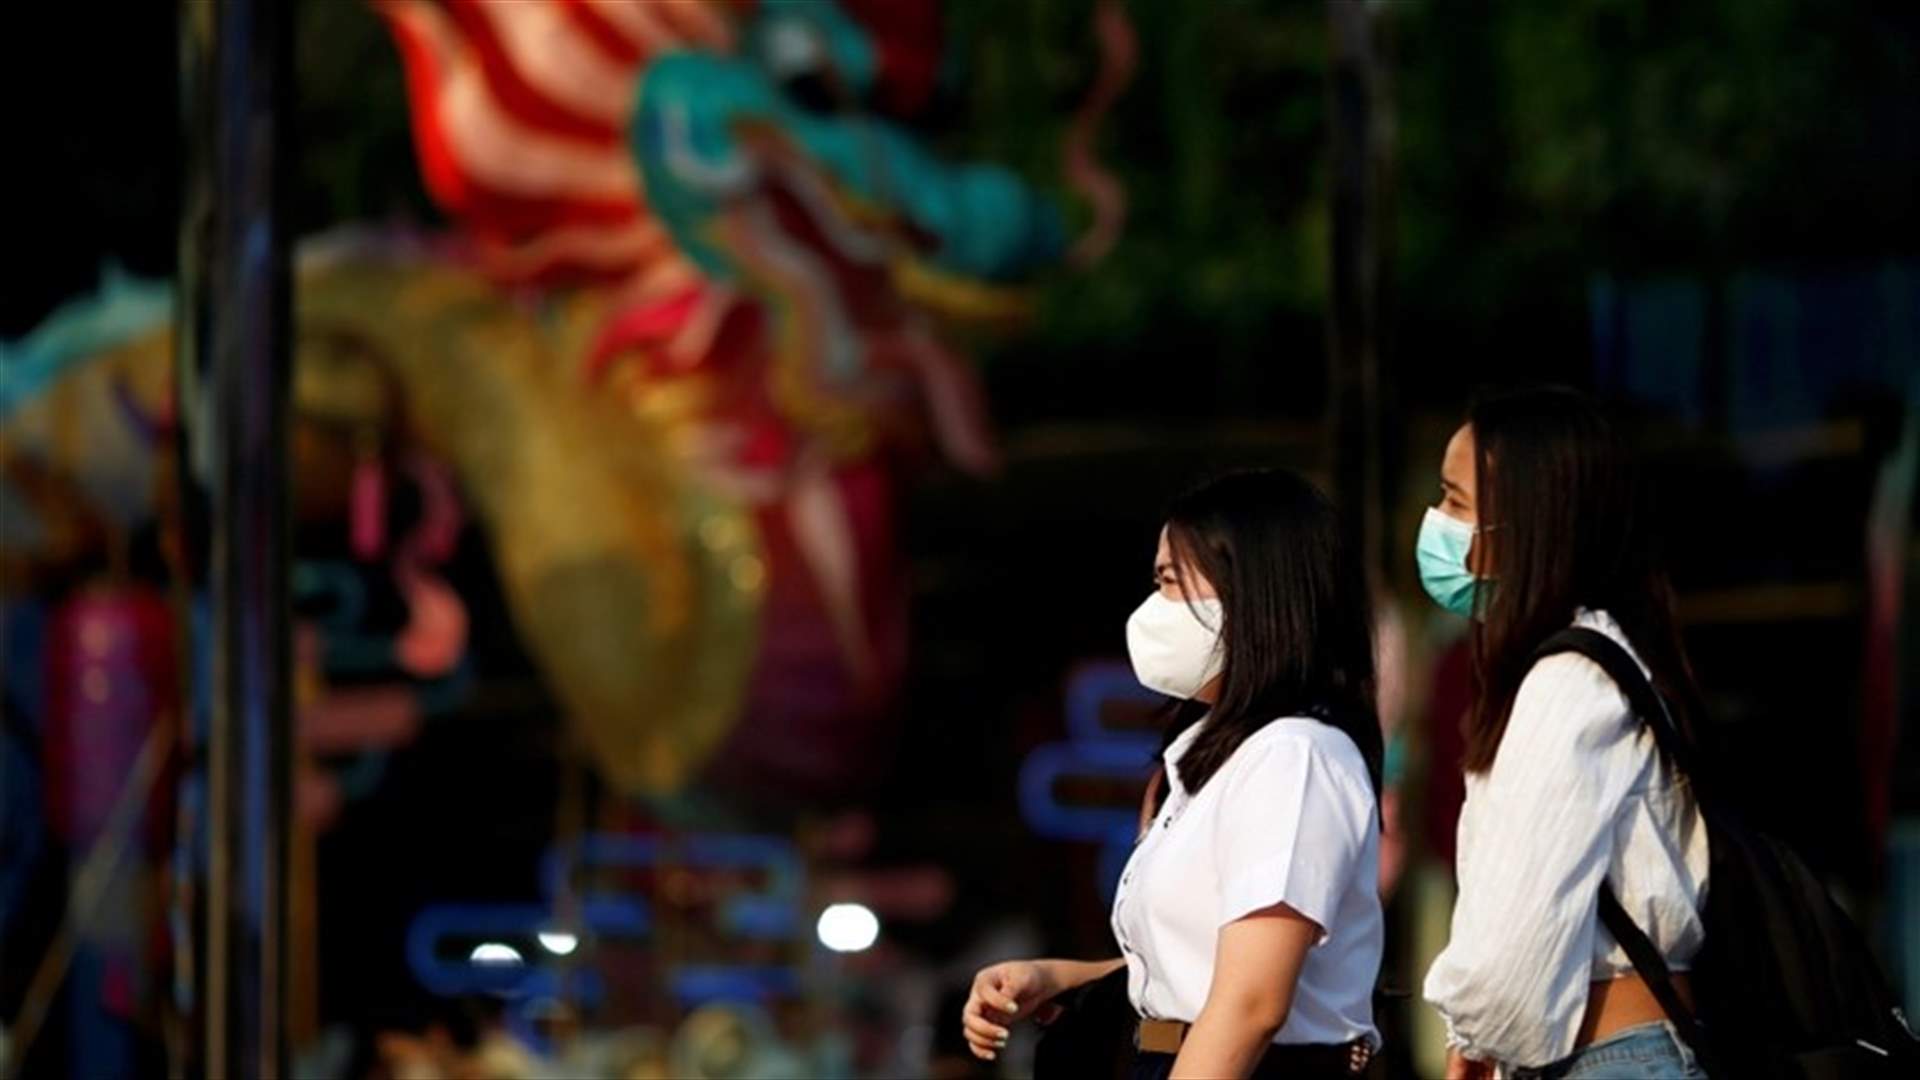 أربع إصابات جديدة بفيروس كورونا في تايلاند ولا وفيات